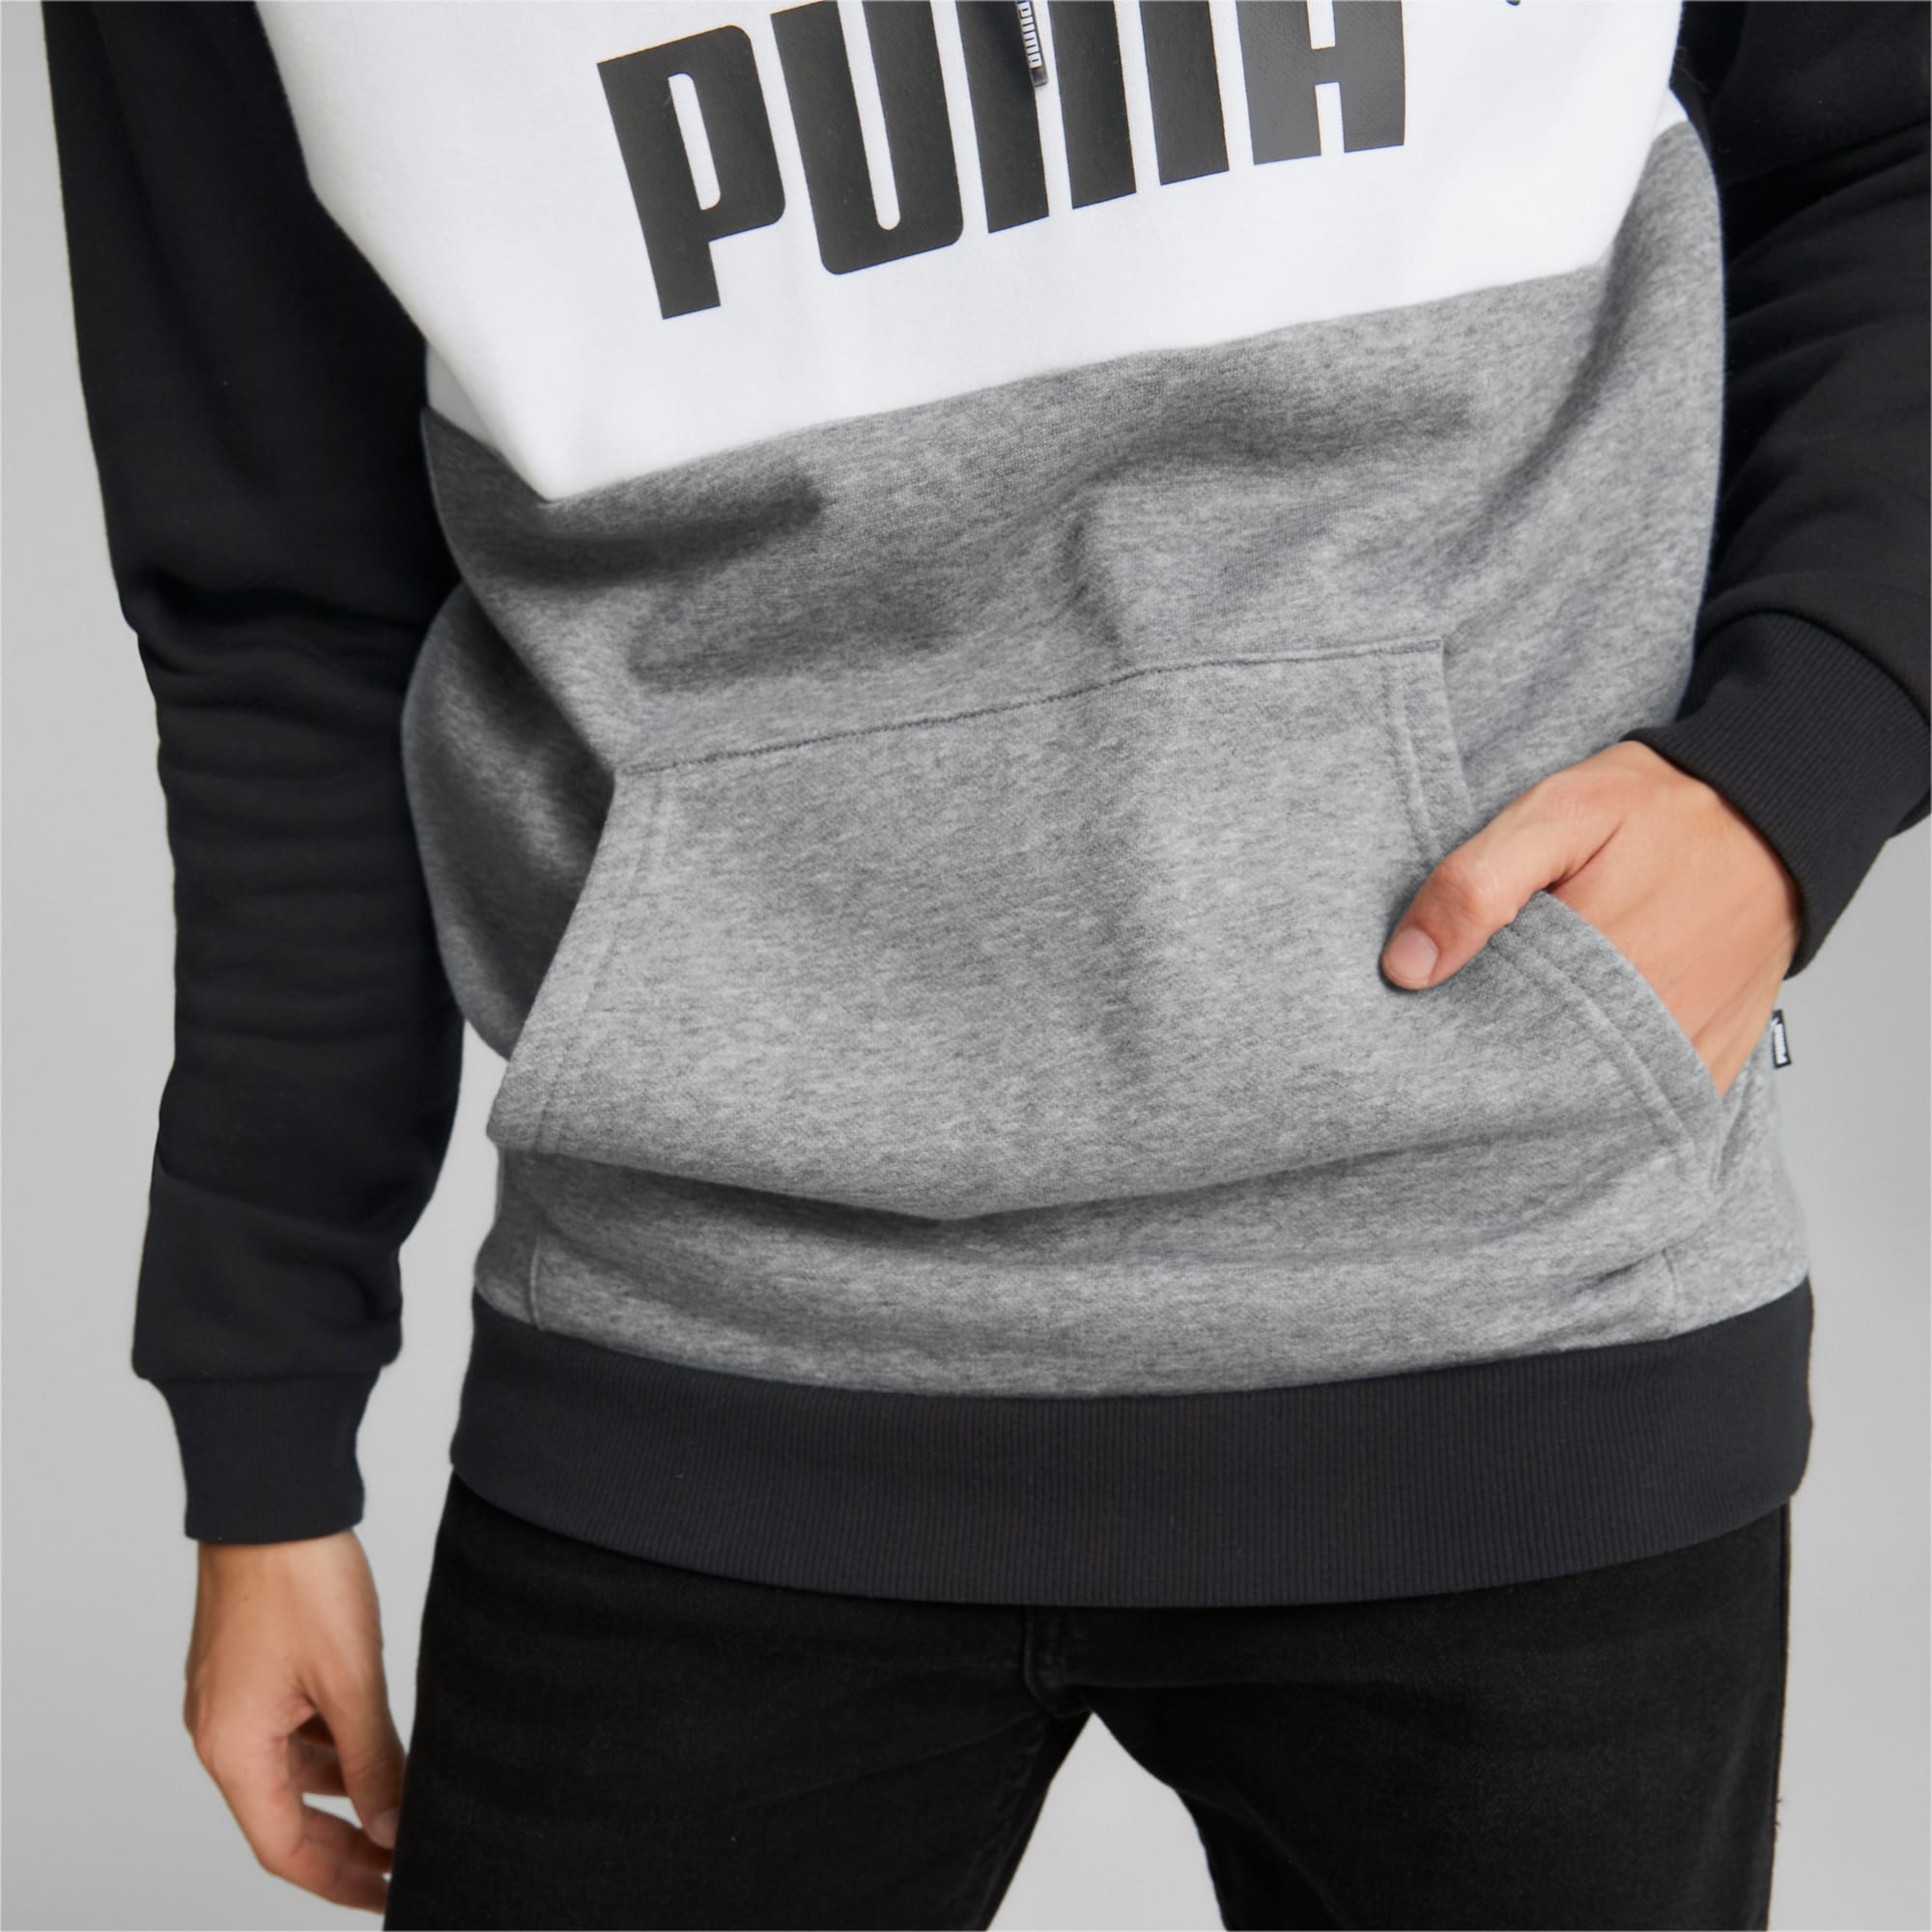 Camiseta Puma Essential Colorblock 846127-06